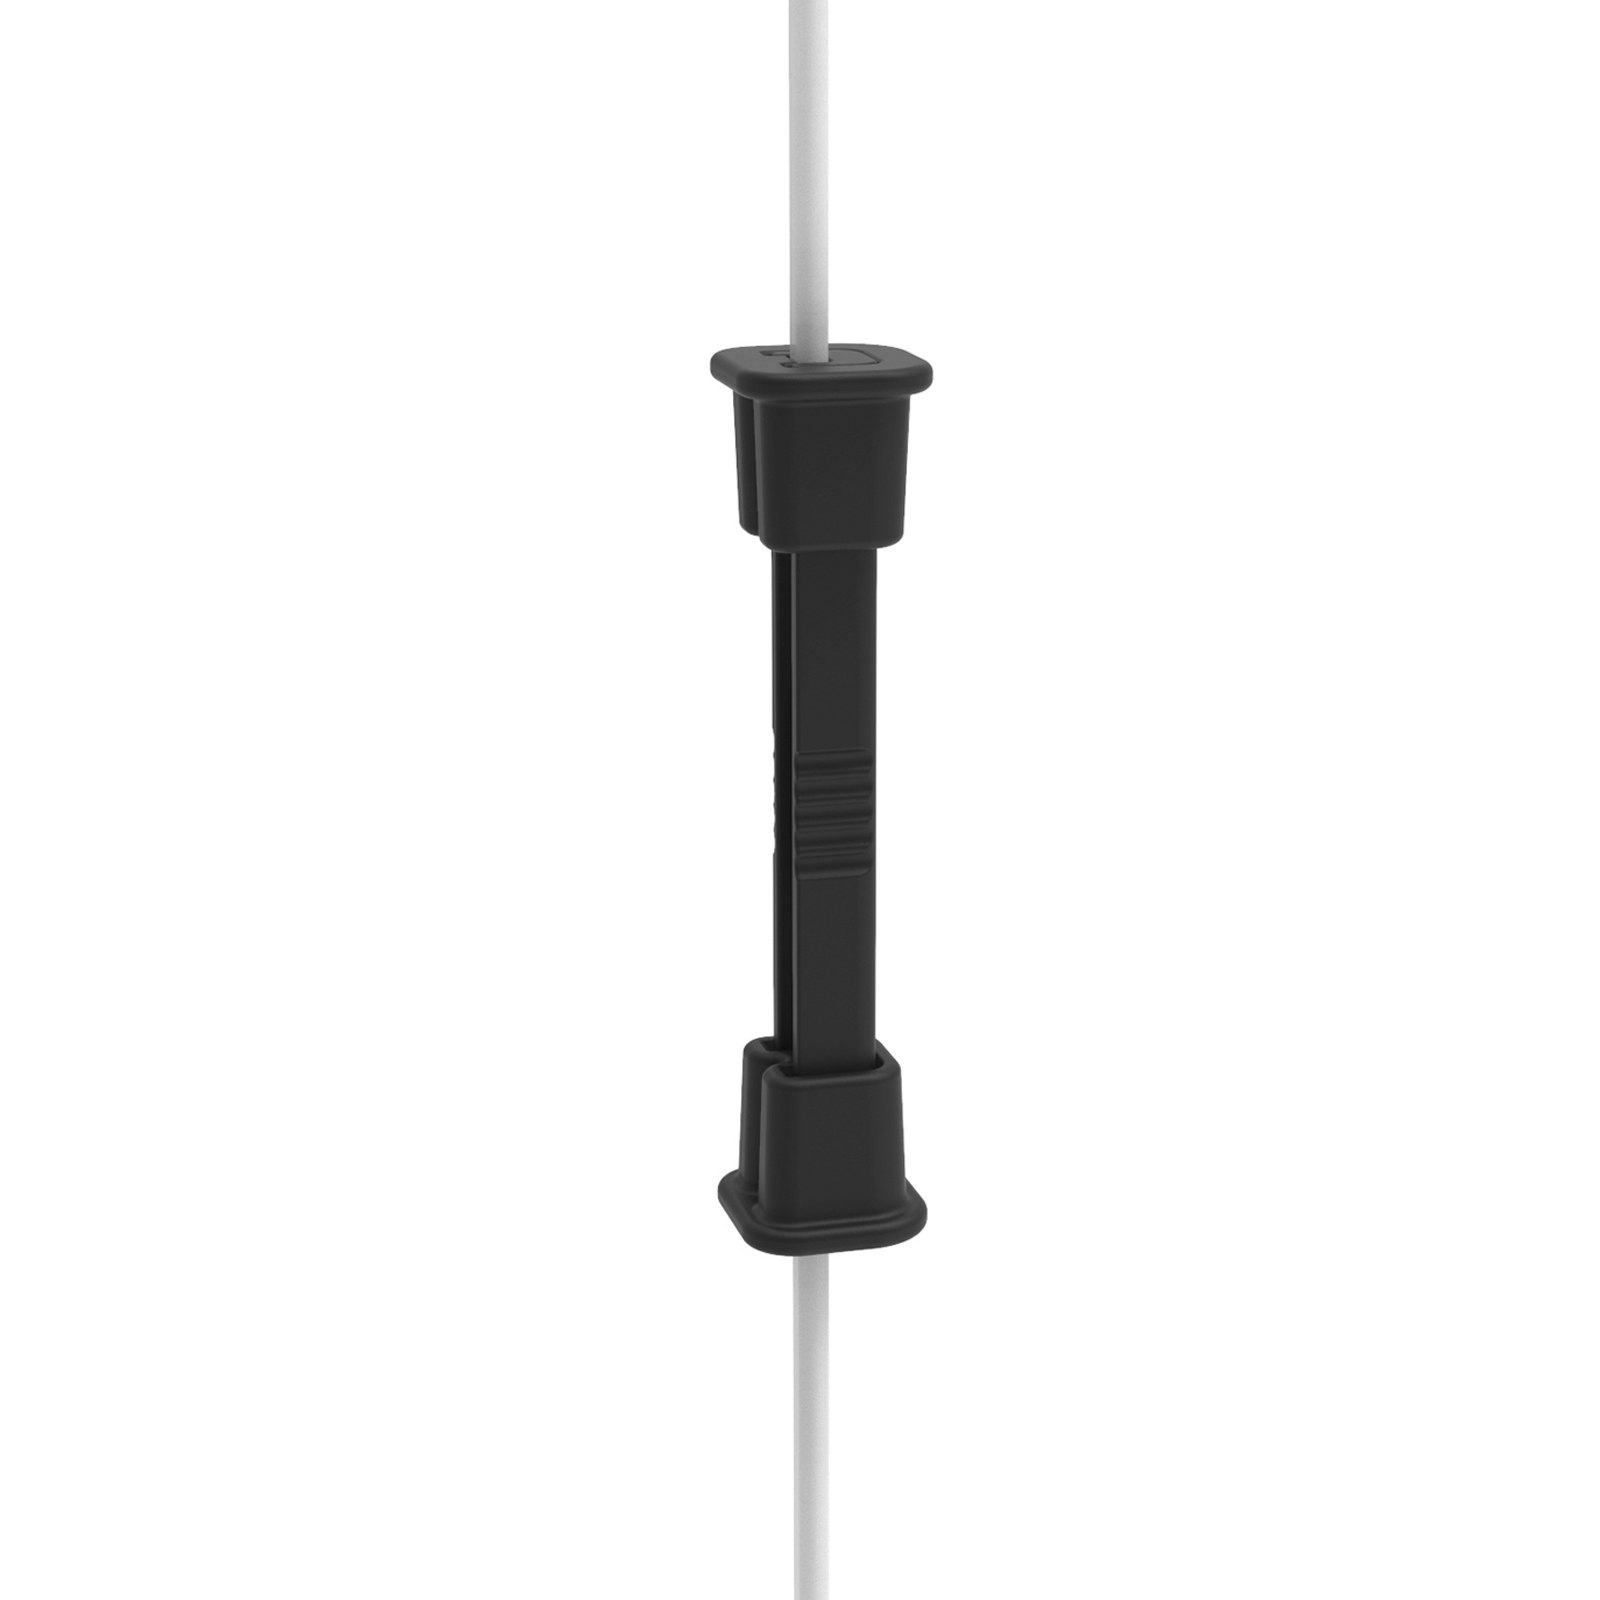 10x Litzclip függőleges merevítő csatlakozó villanypásztor hálókhoz